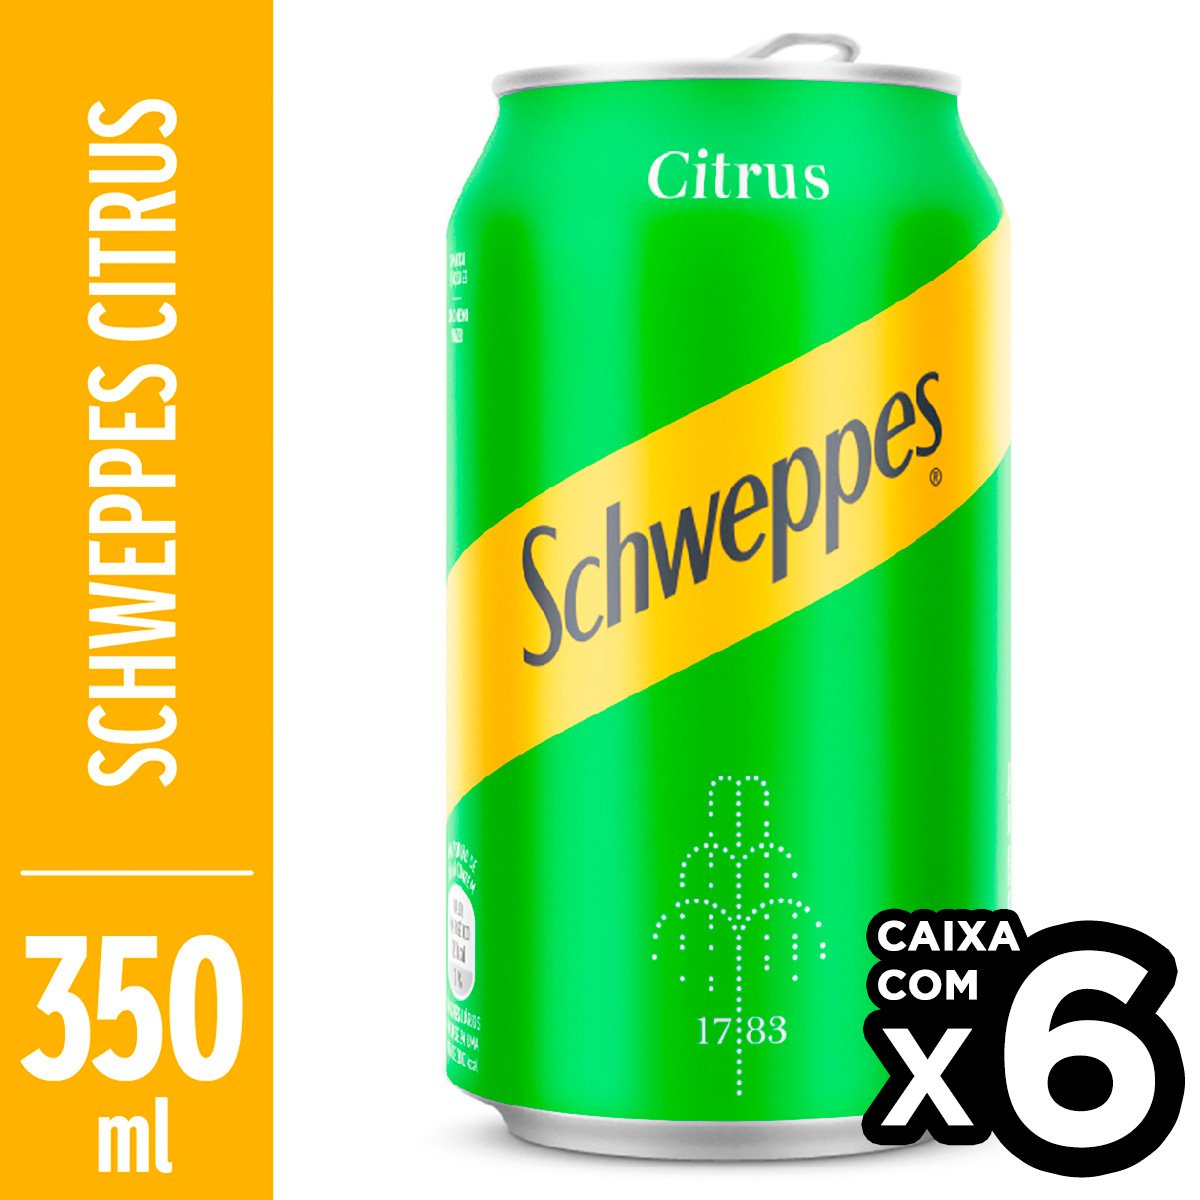 Refrigerante FYS Sabor Limão Siciliano Lata 12UND - 350ml - Bebida In Box